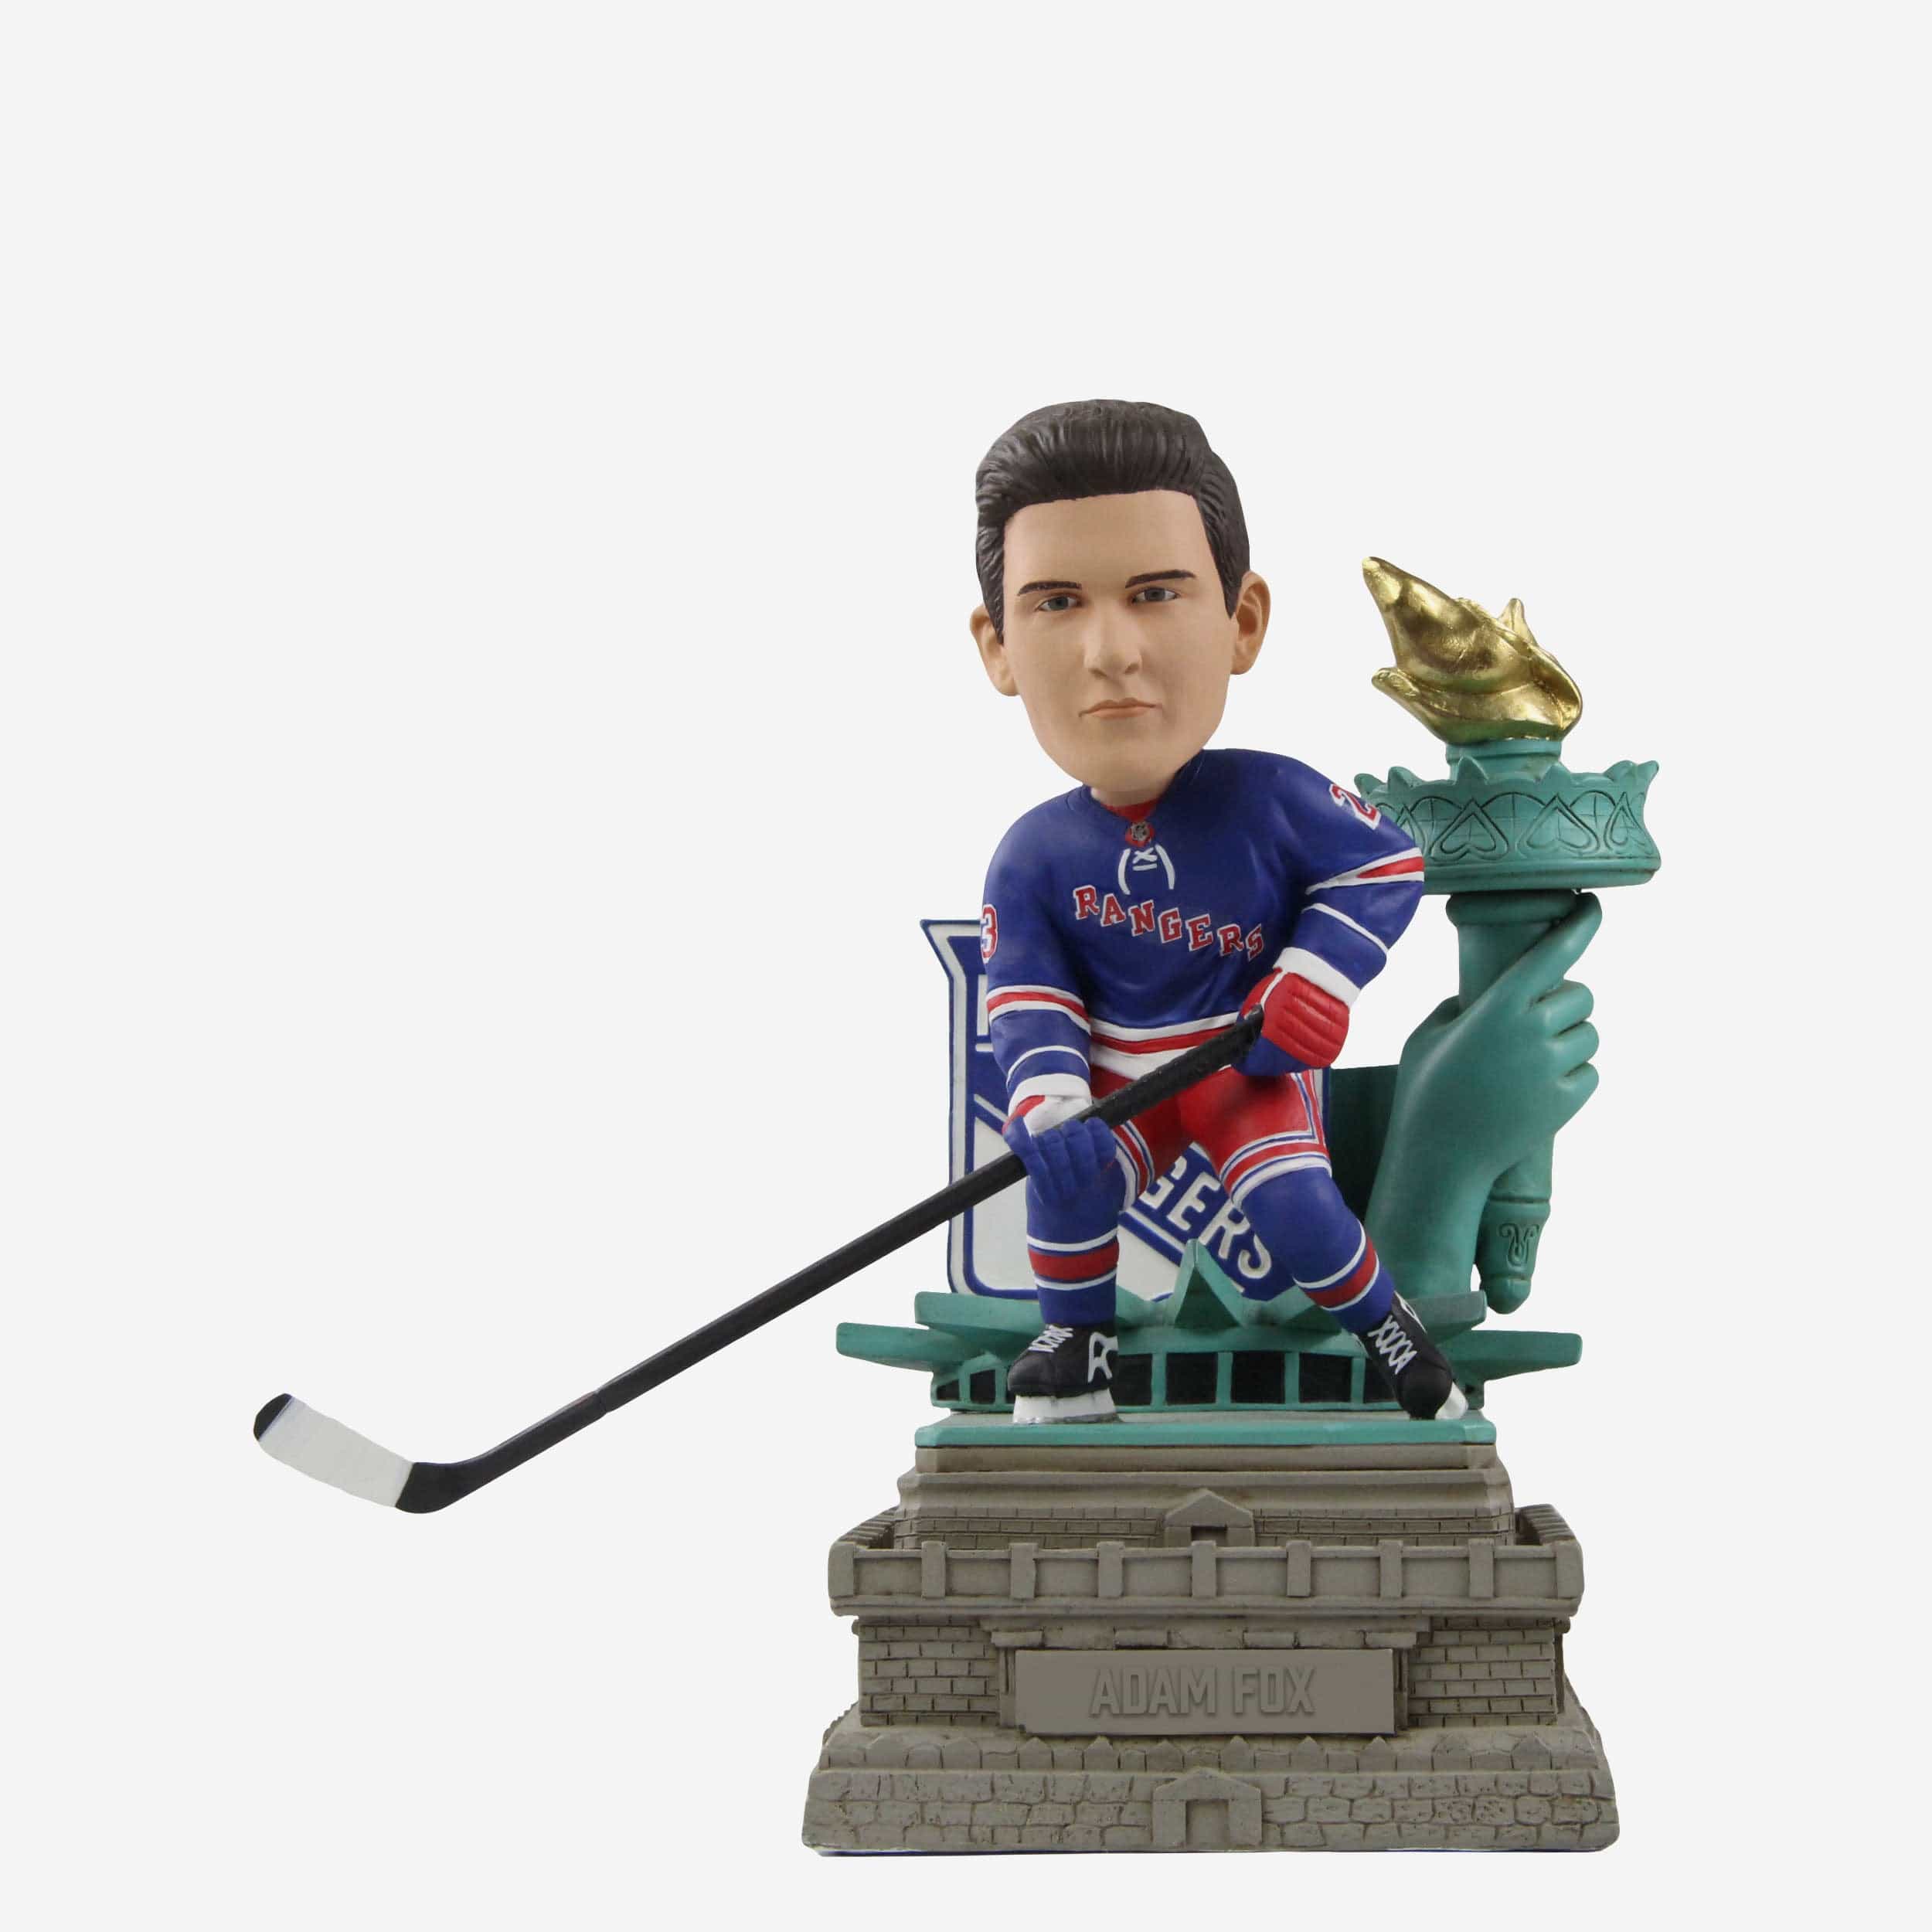 New York Rangers Team Mascot Statue